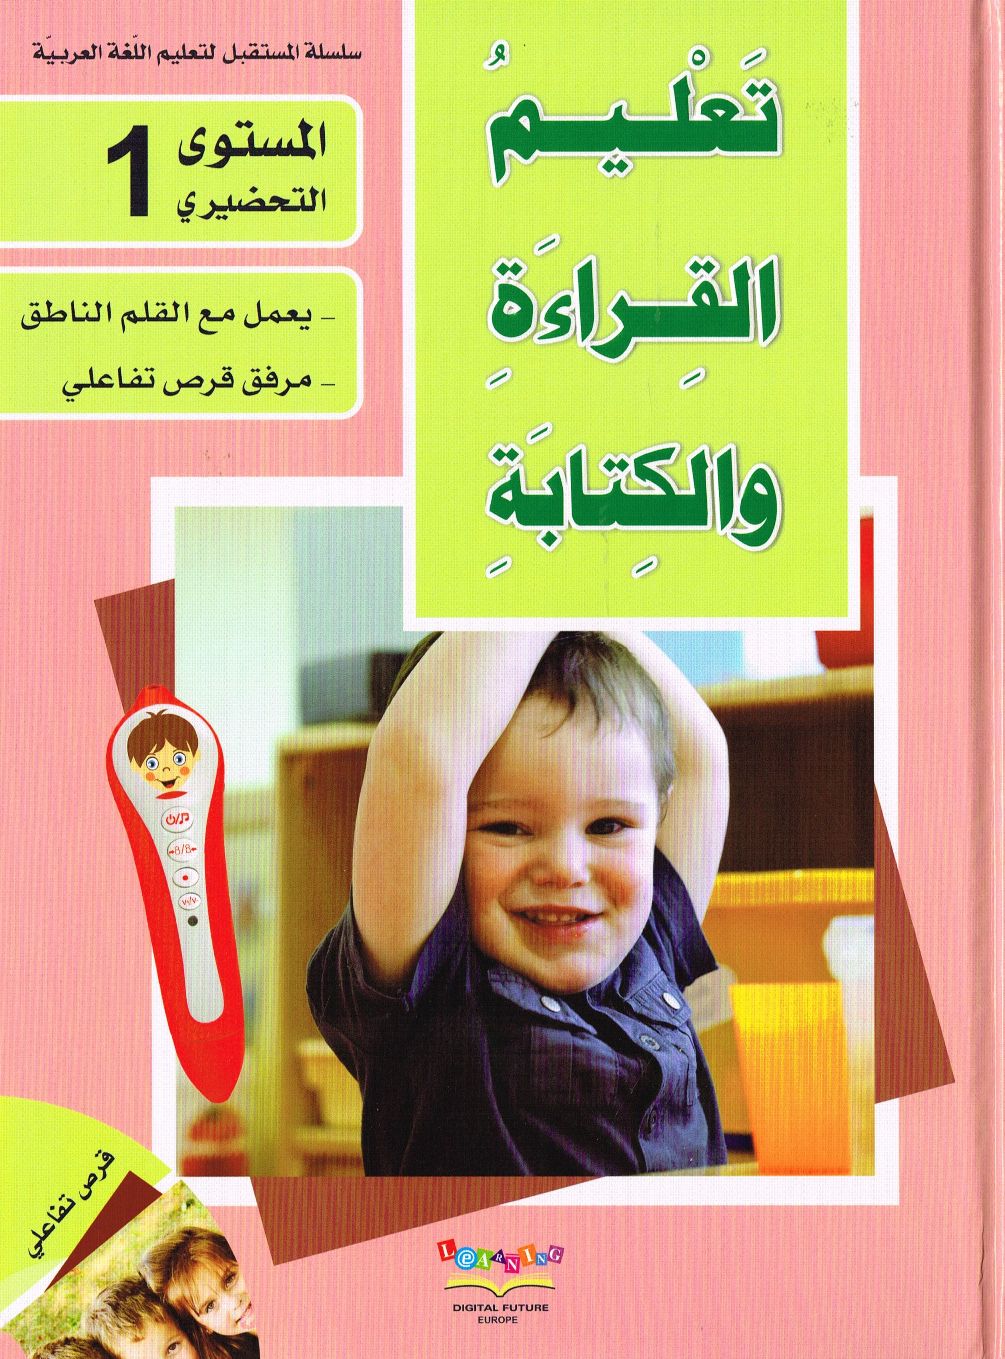 Arabisch Lesen und Schreiben lernen Vorschule 1سلسلة المستقبل المستوى التحضيري الأول